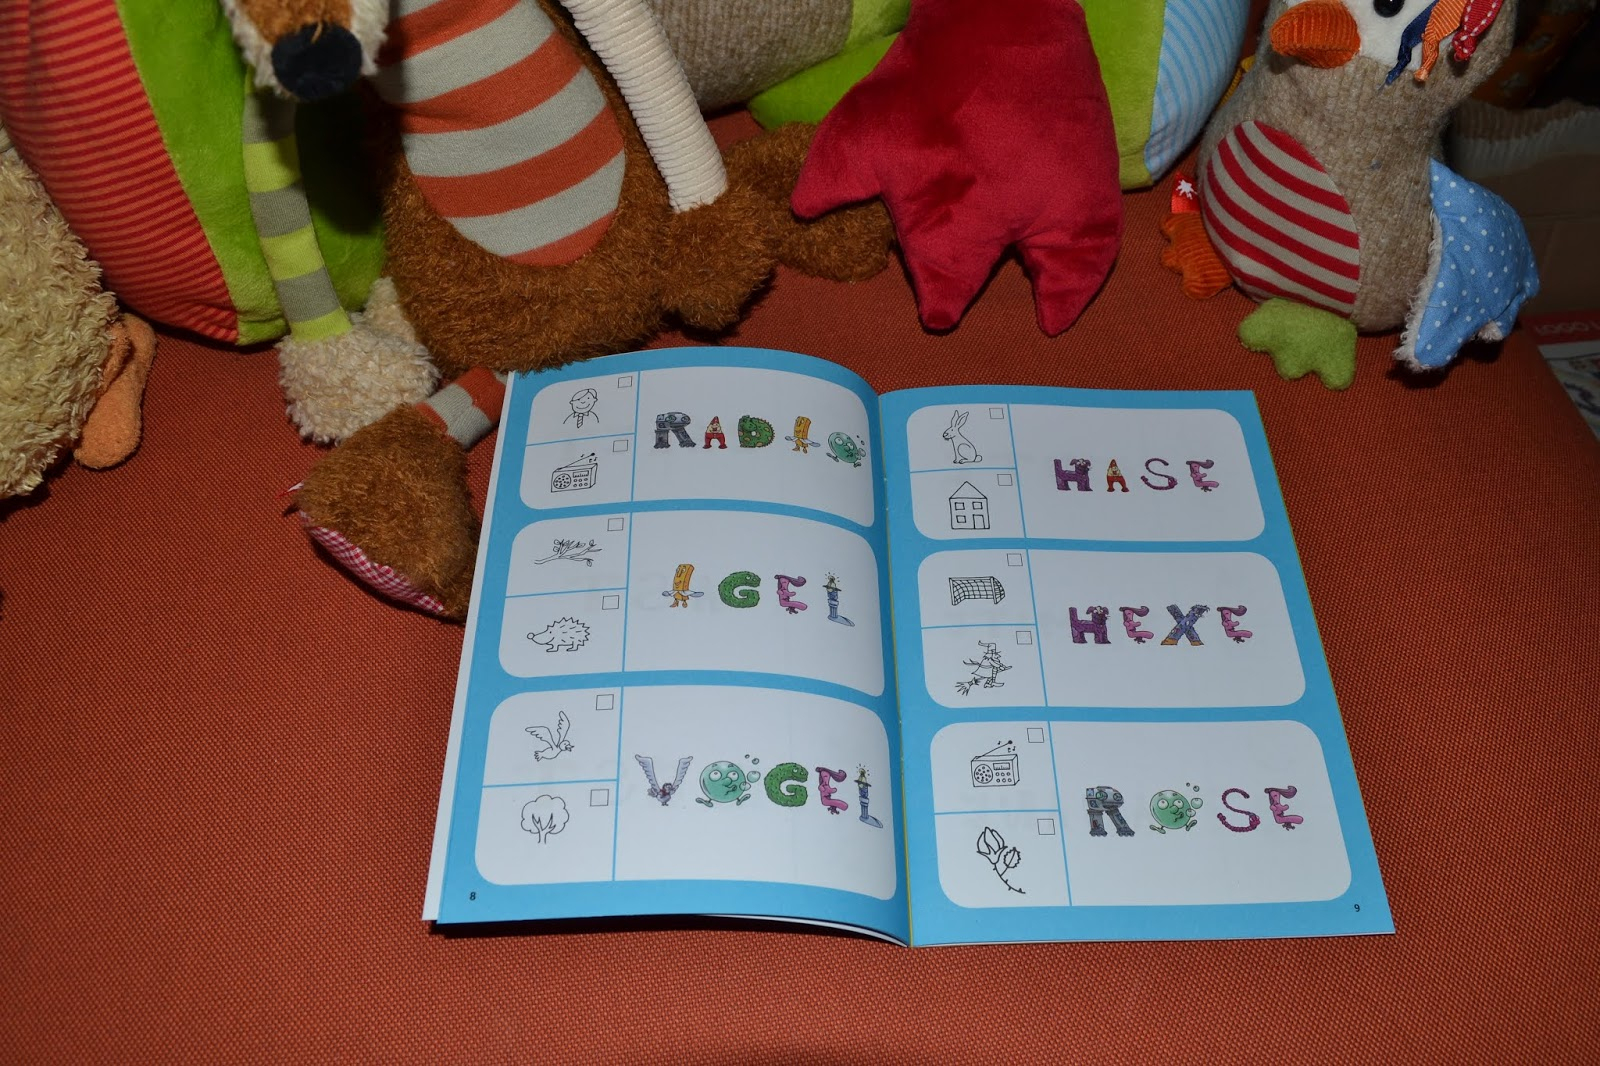 Kinderbuchkiste : Die Alphas - Mit Allen Sinnen Lesen Lernen innen 4 Bilder 1 Wort 7 Buchstaben Kinder